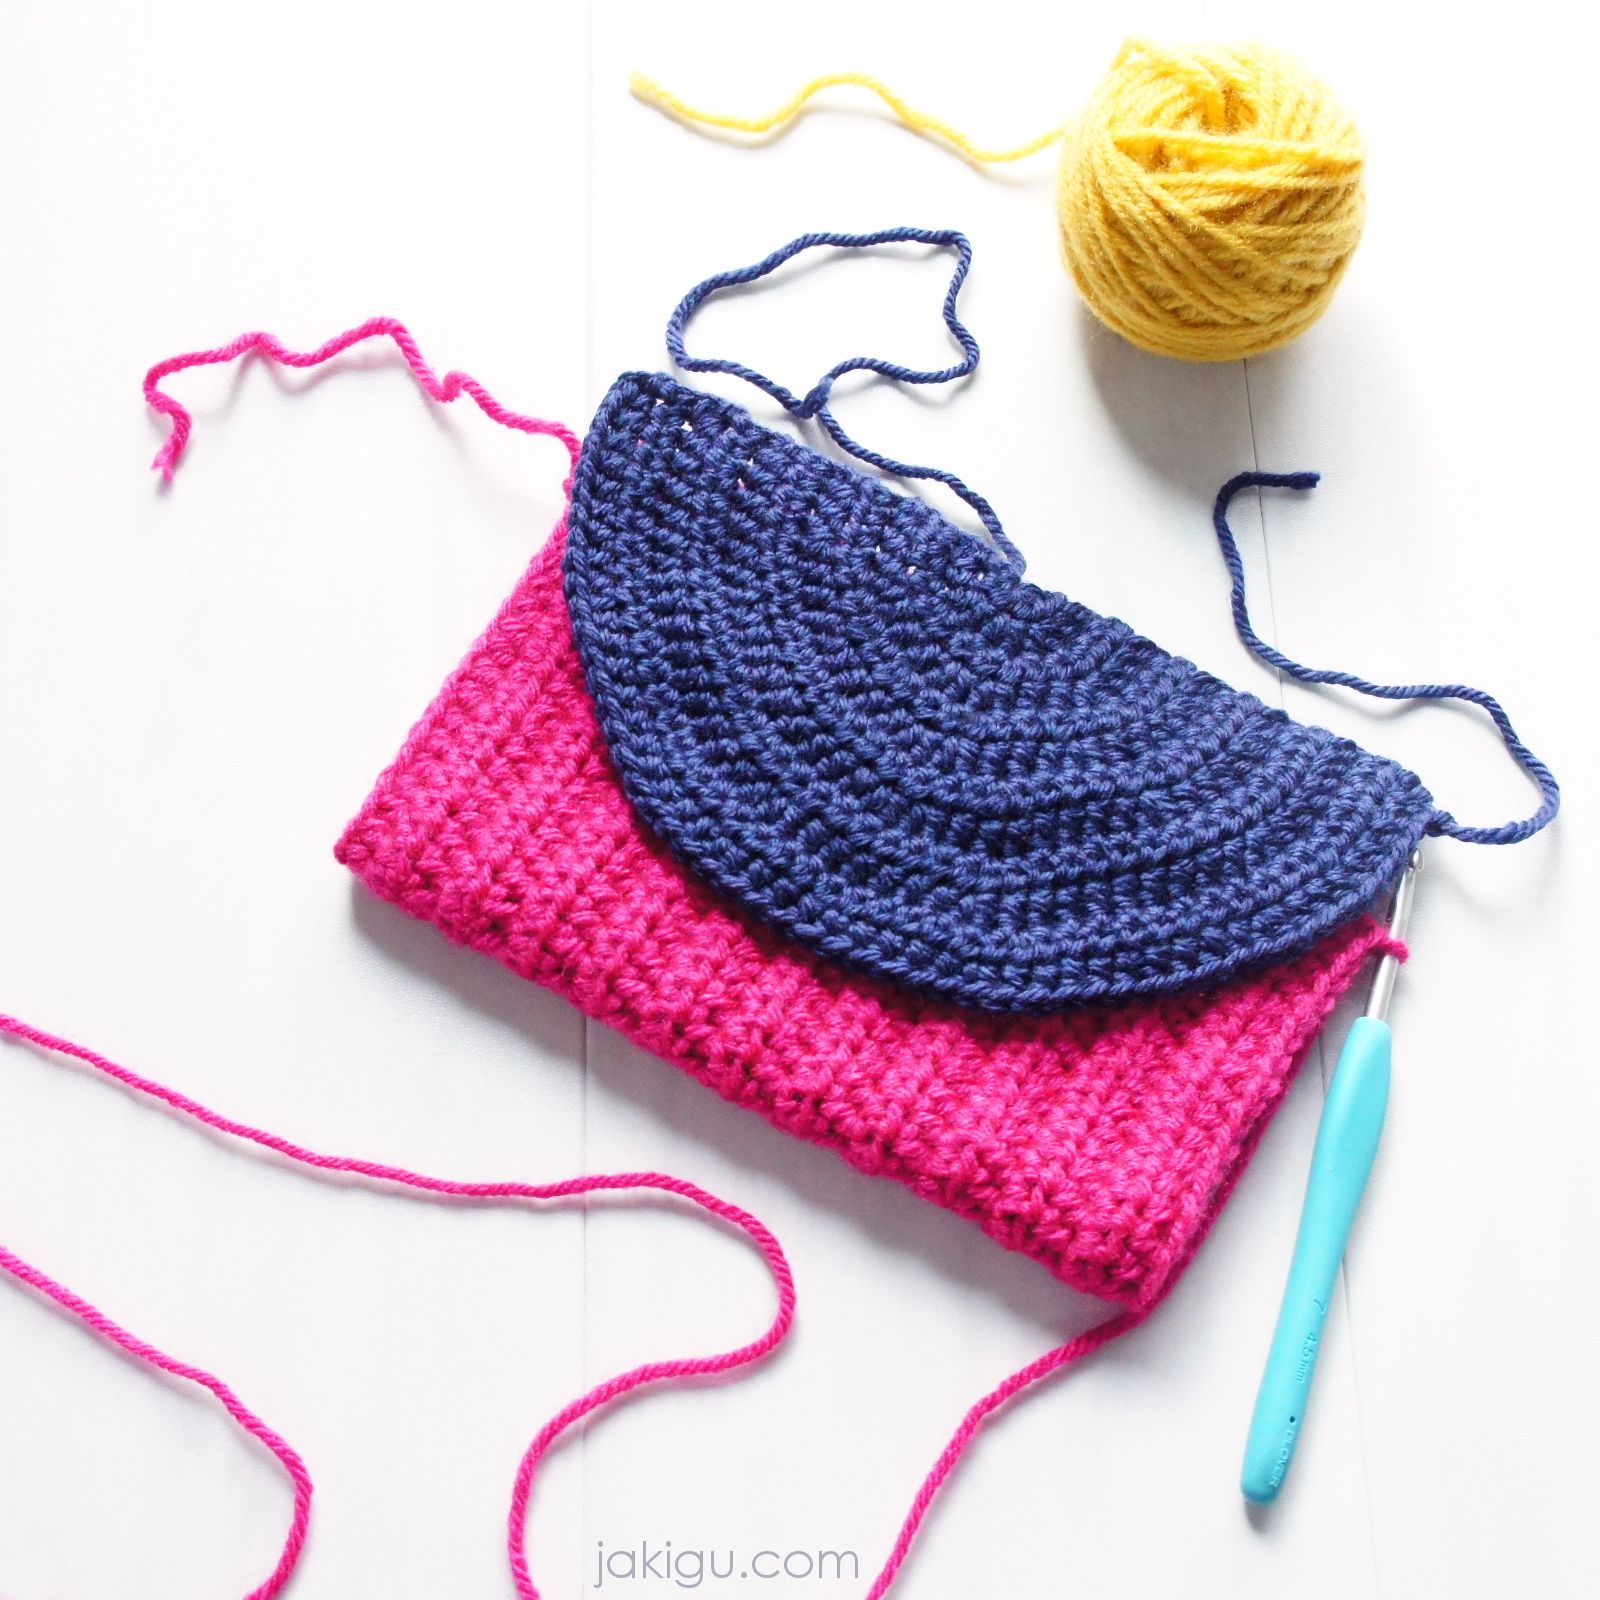 Bold crochet clutch - handbag - journal cover